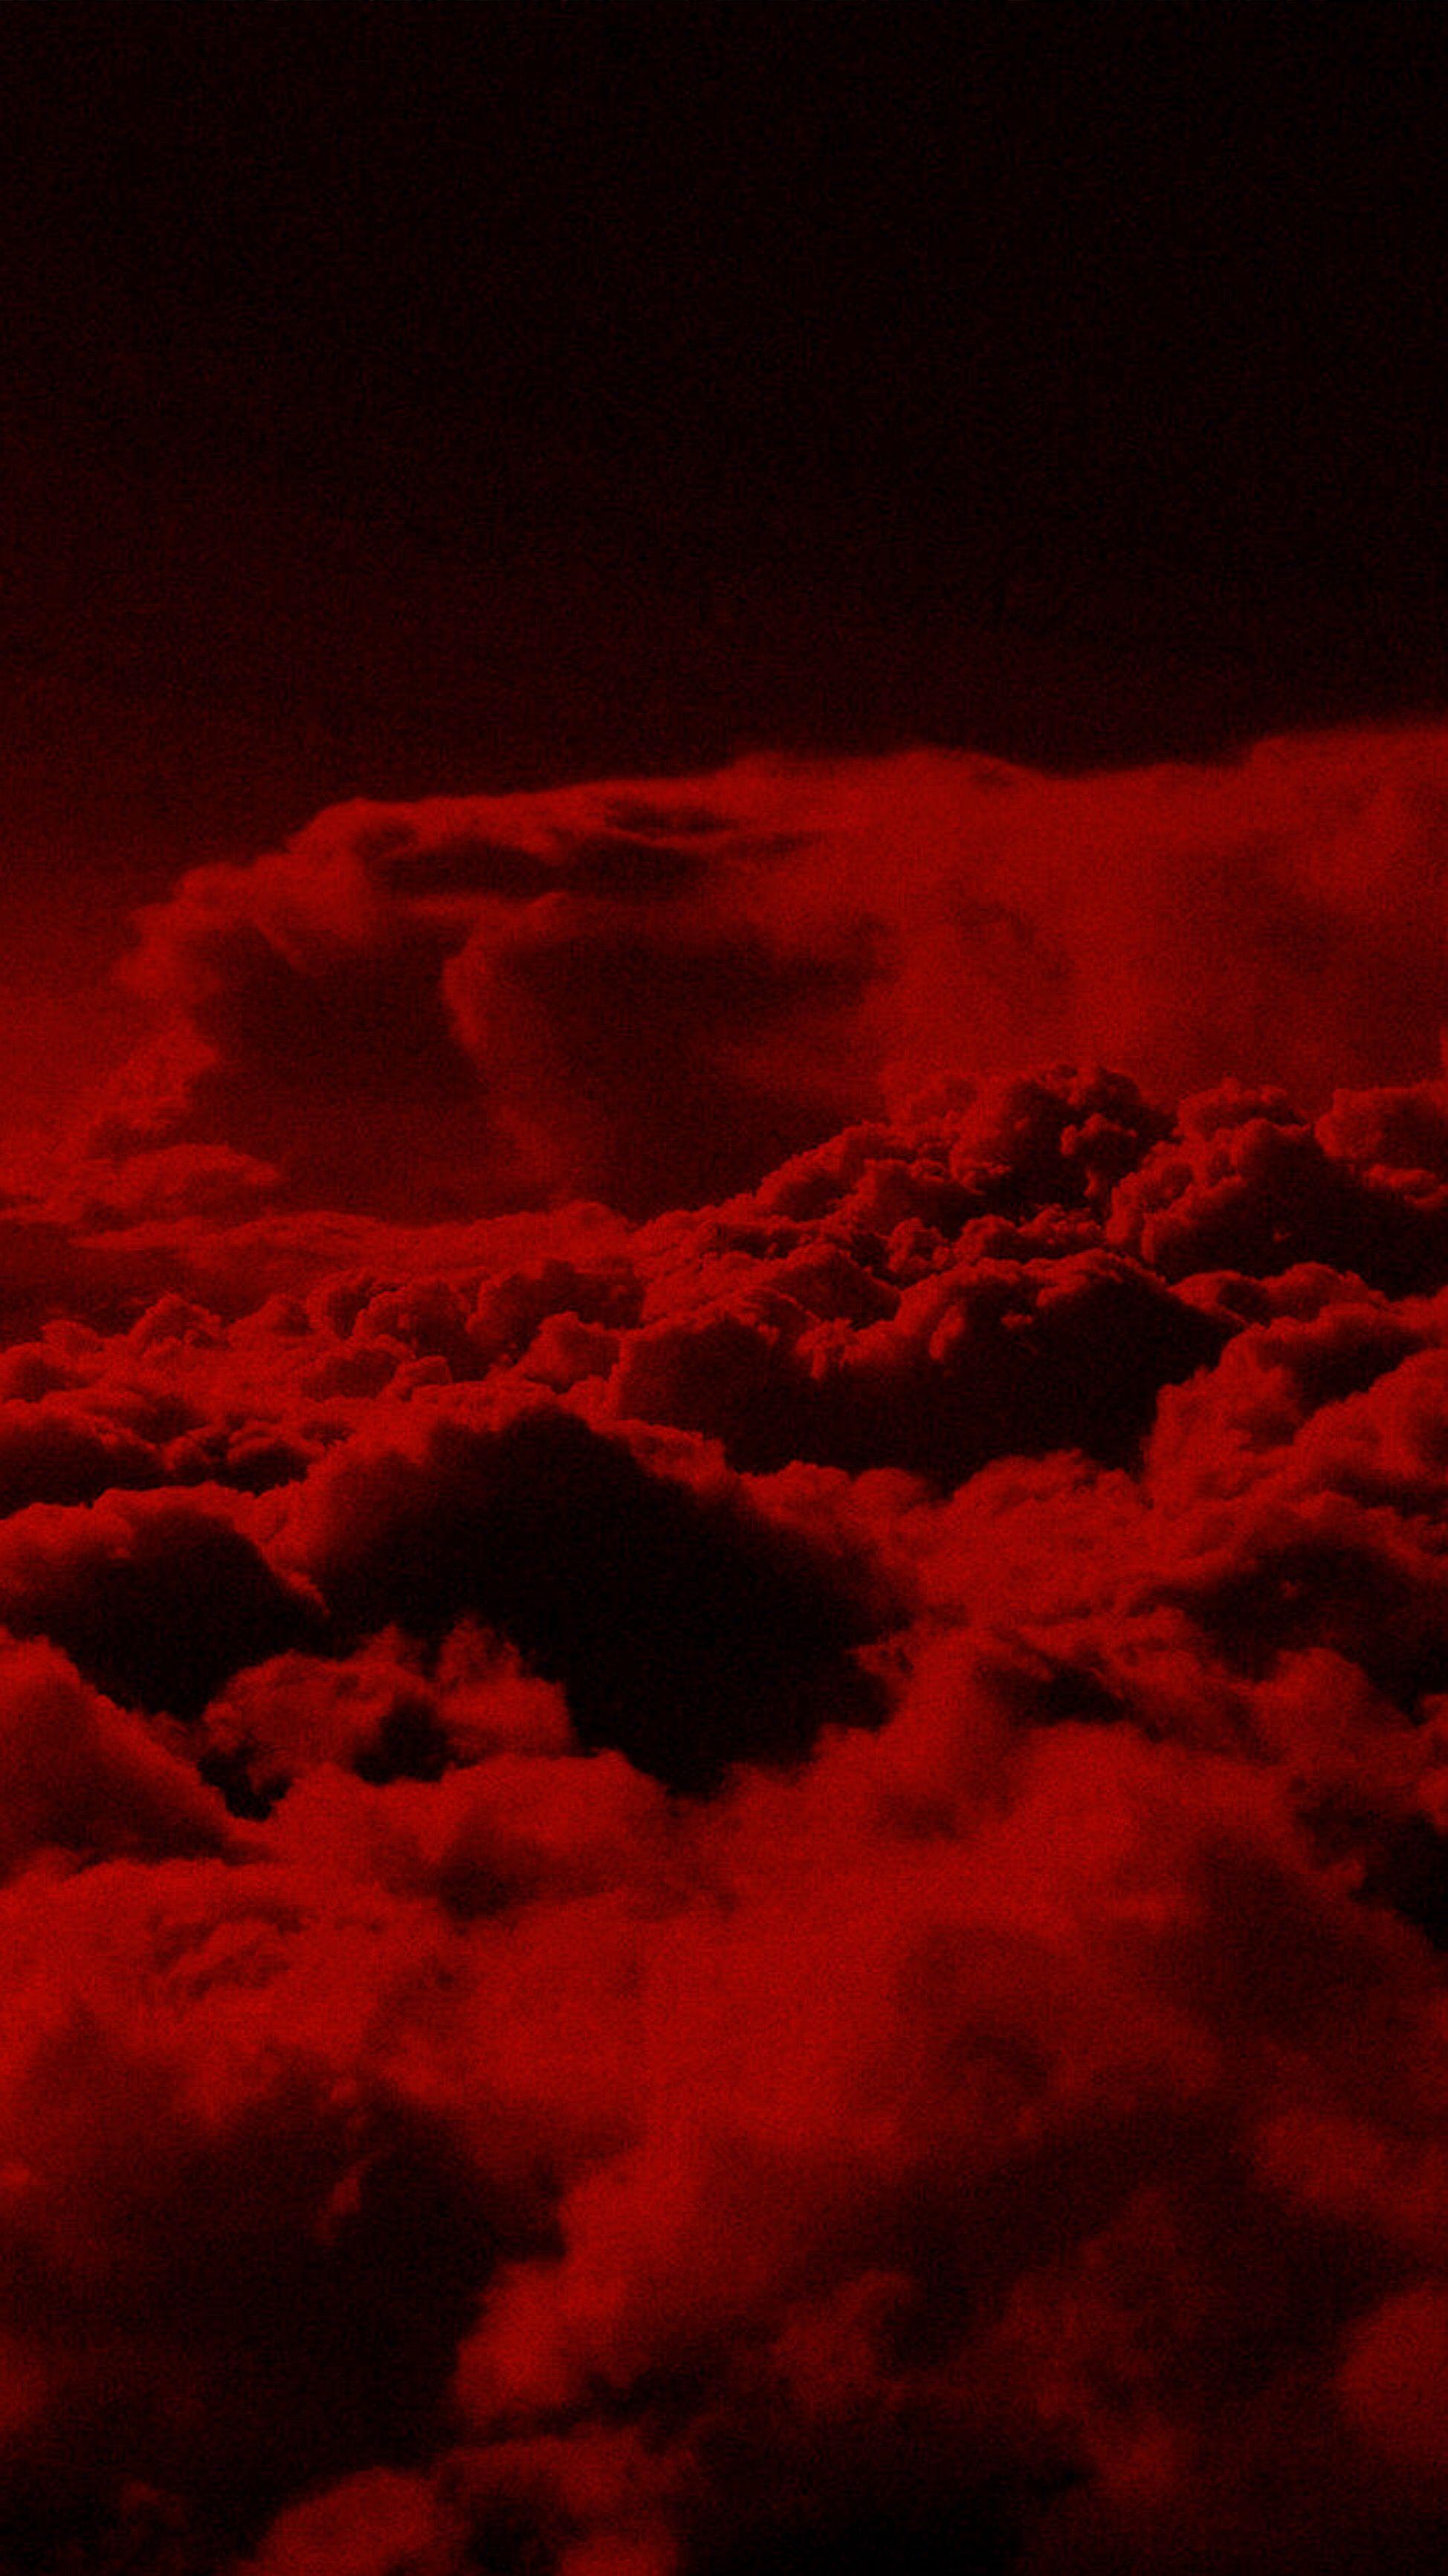 Bầu trời đỏ: Rực rỡ như lửa đang cháy, bầu trời đỏ là một trong những hiện tượng thiên nhiên kỳ diệu và thơ mộng. Hãy ngắm nhìn những hình ảnh bầu trời đỏ đẹp nhất, hút hồn và đưa bạn đến một thế giới đầy màu sắc và cảm xúc.